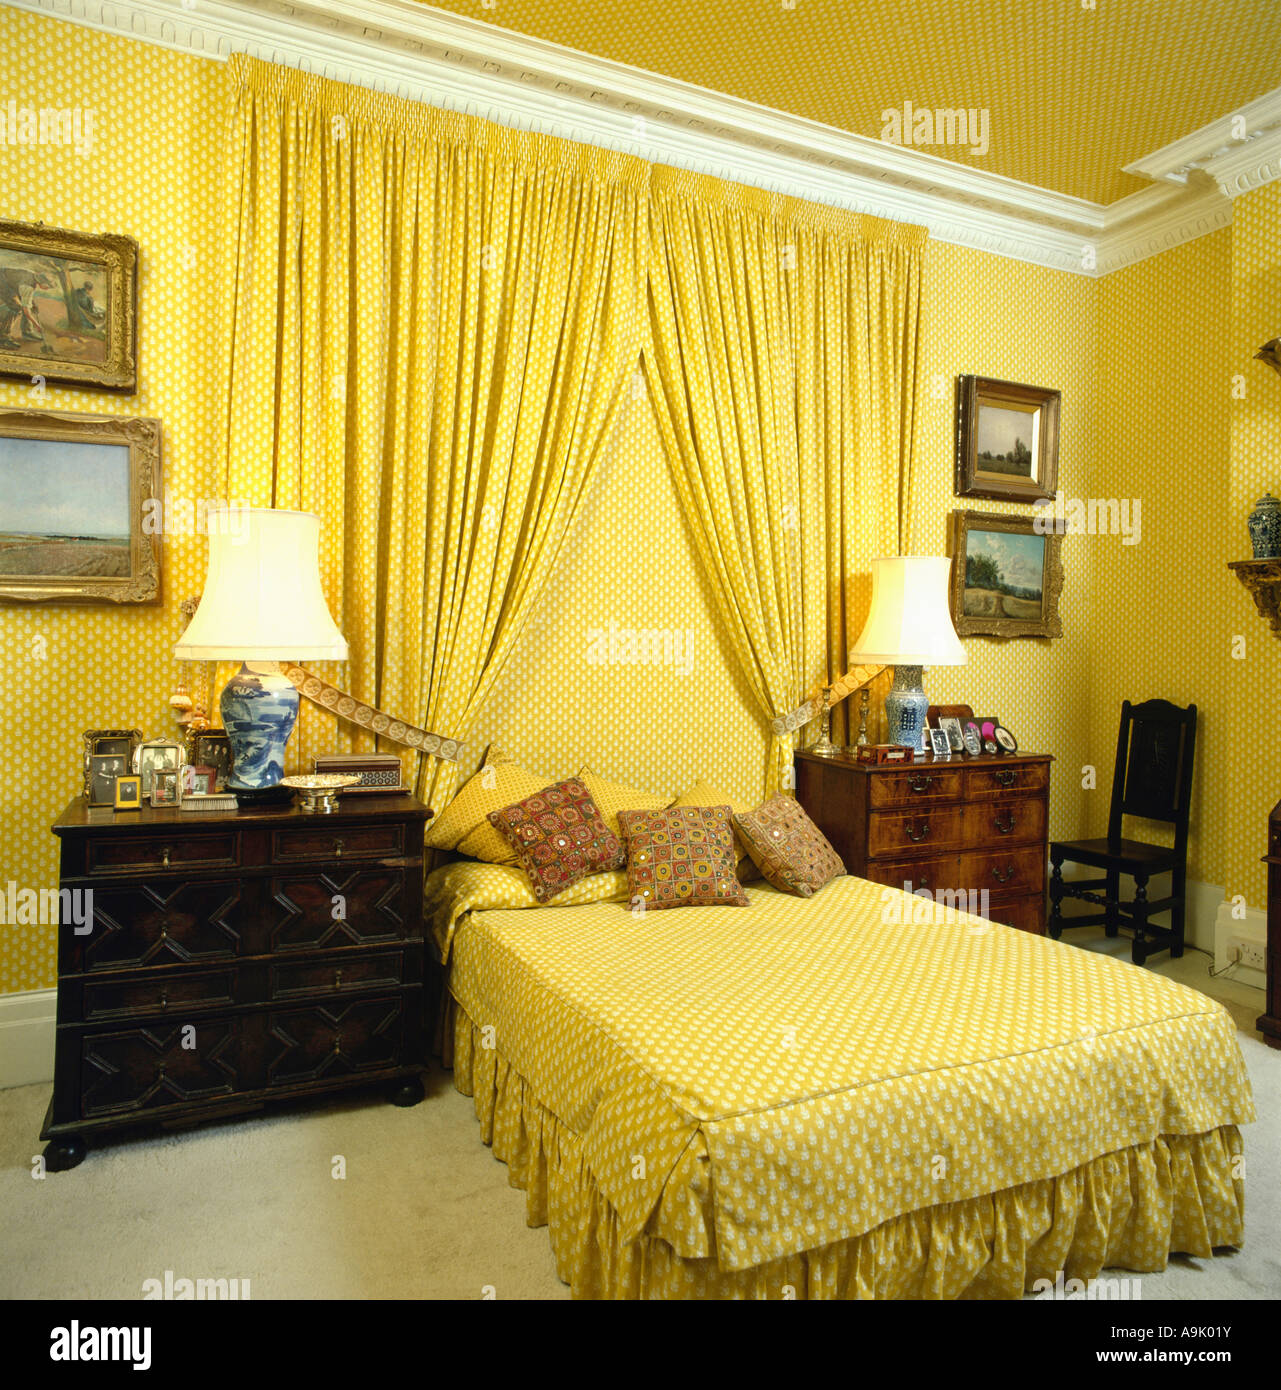 Las cortinas amarillas en la pared detrás de la cama con sábanas de color  amarillo a amarillo dormitorio con armarios de caoba en ambos lados de la  cama Fotografía de stock -